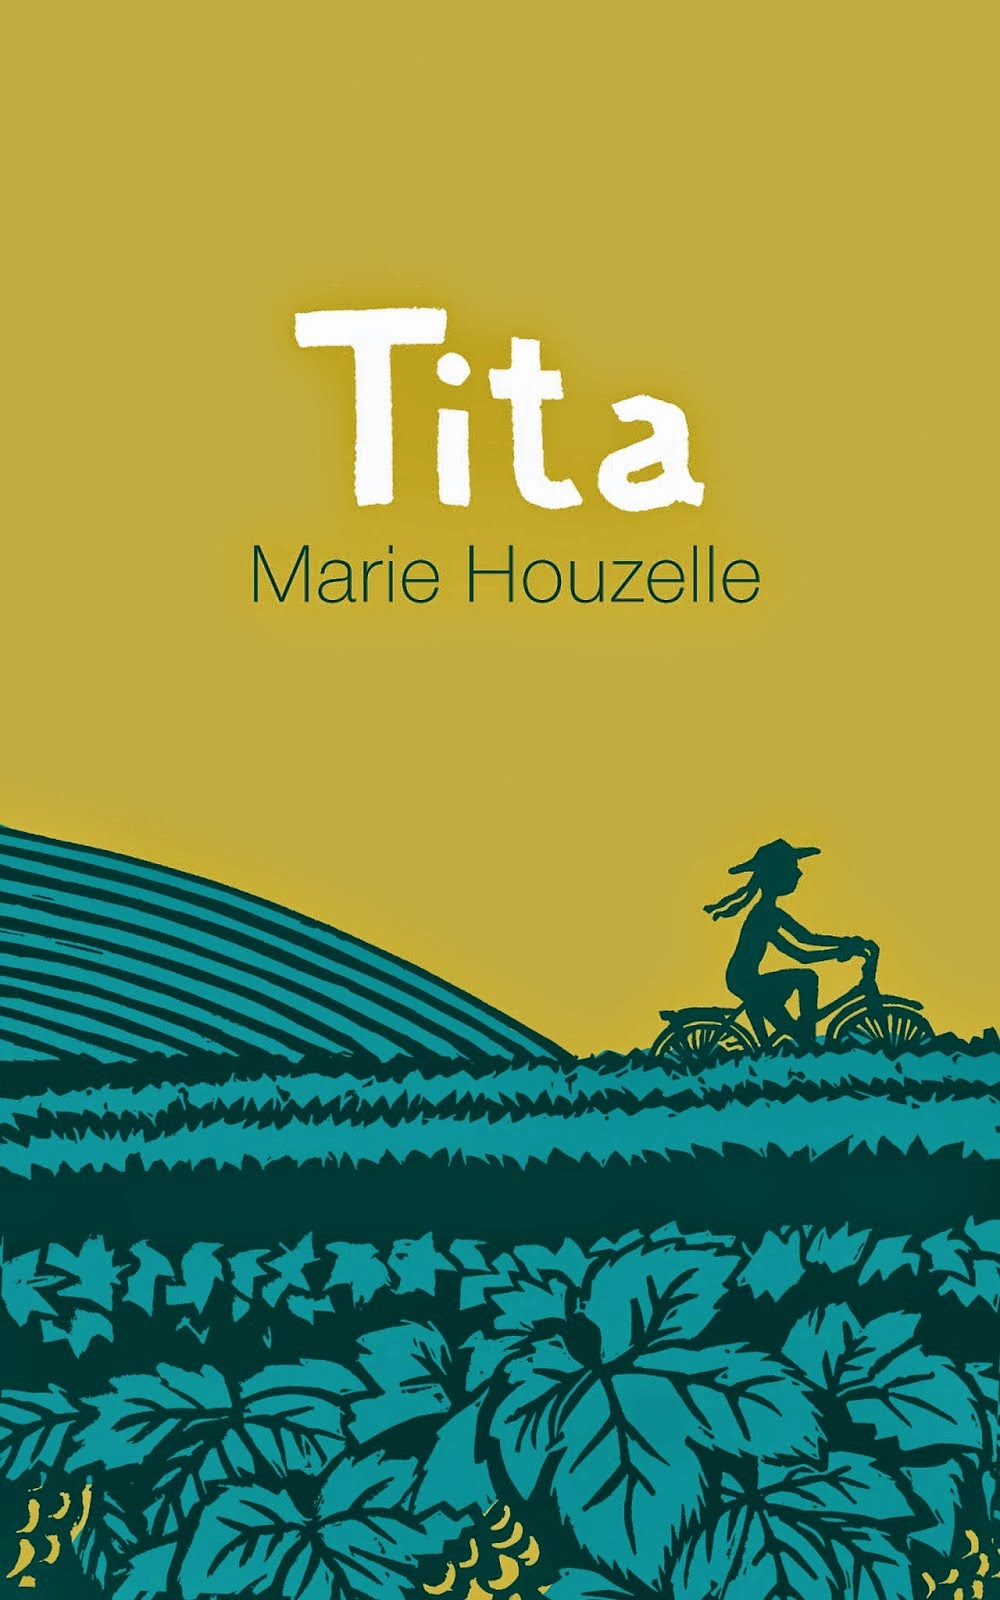 NEW! TITA! French author Marie Houzelle's English novel dazzles the Ango writing community!